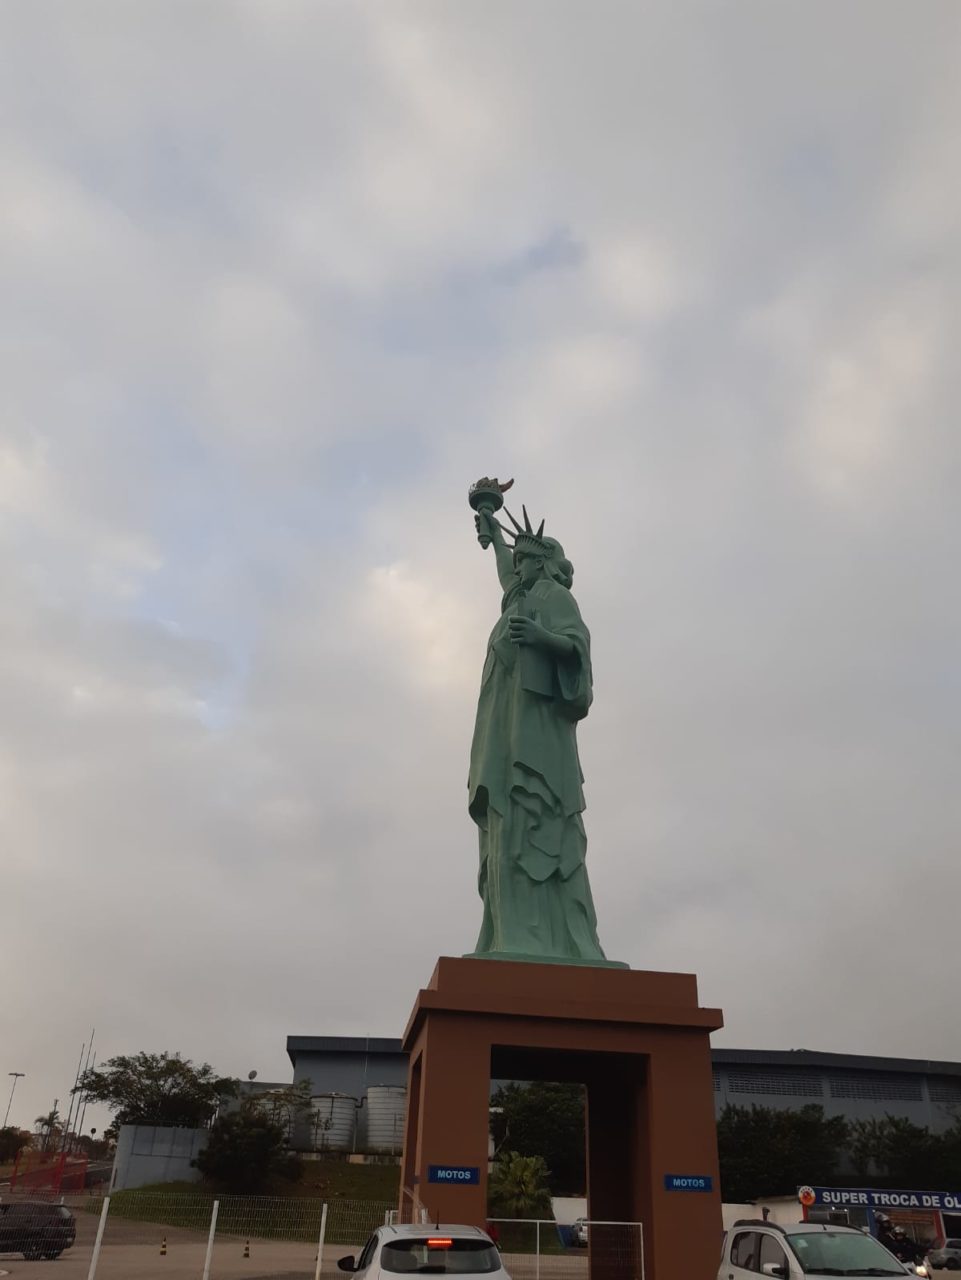 Substituída, Estátua da Liberdade da Havan, na Via Expressa, está de volta!